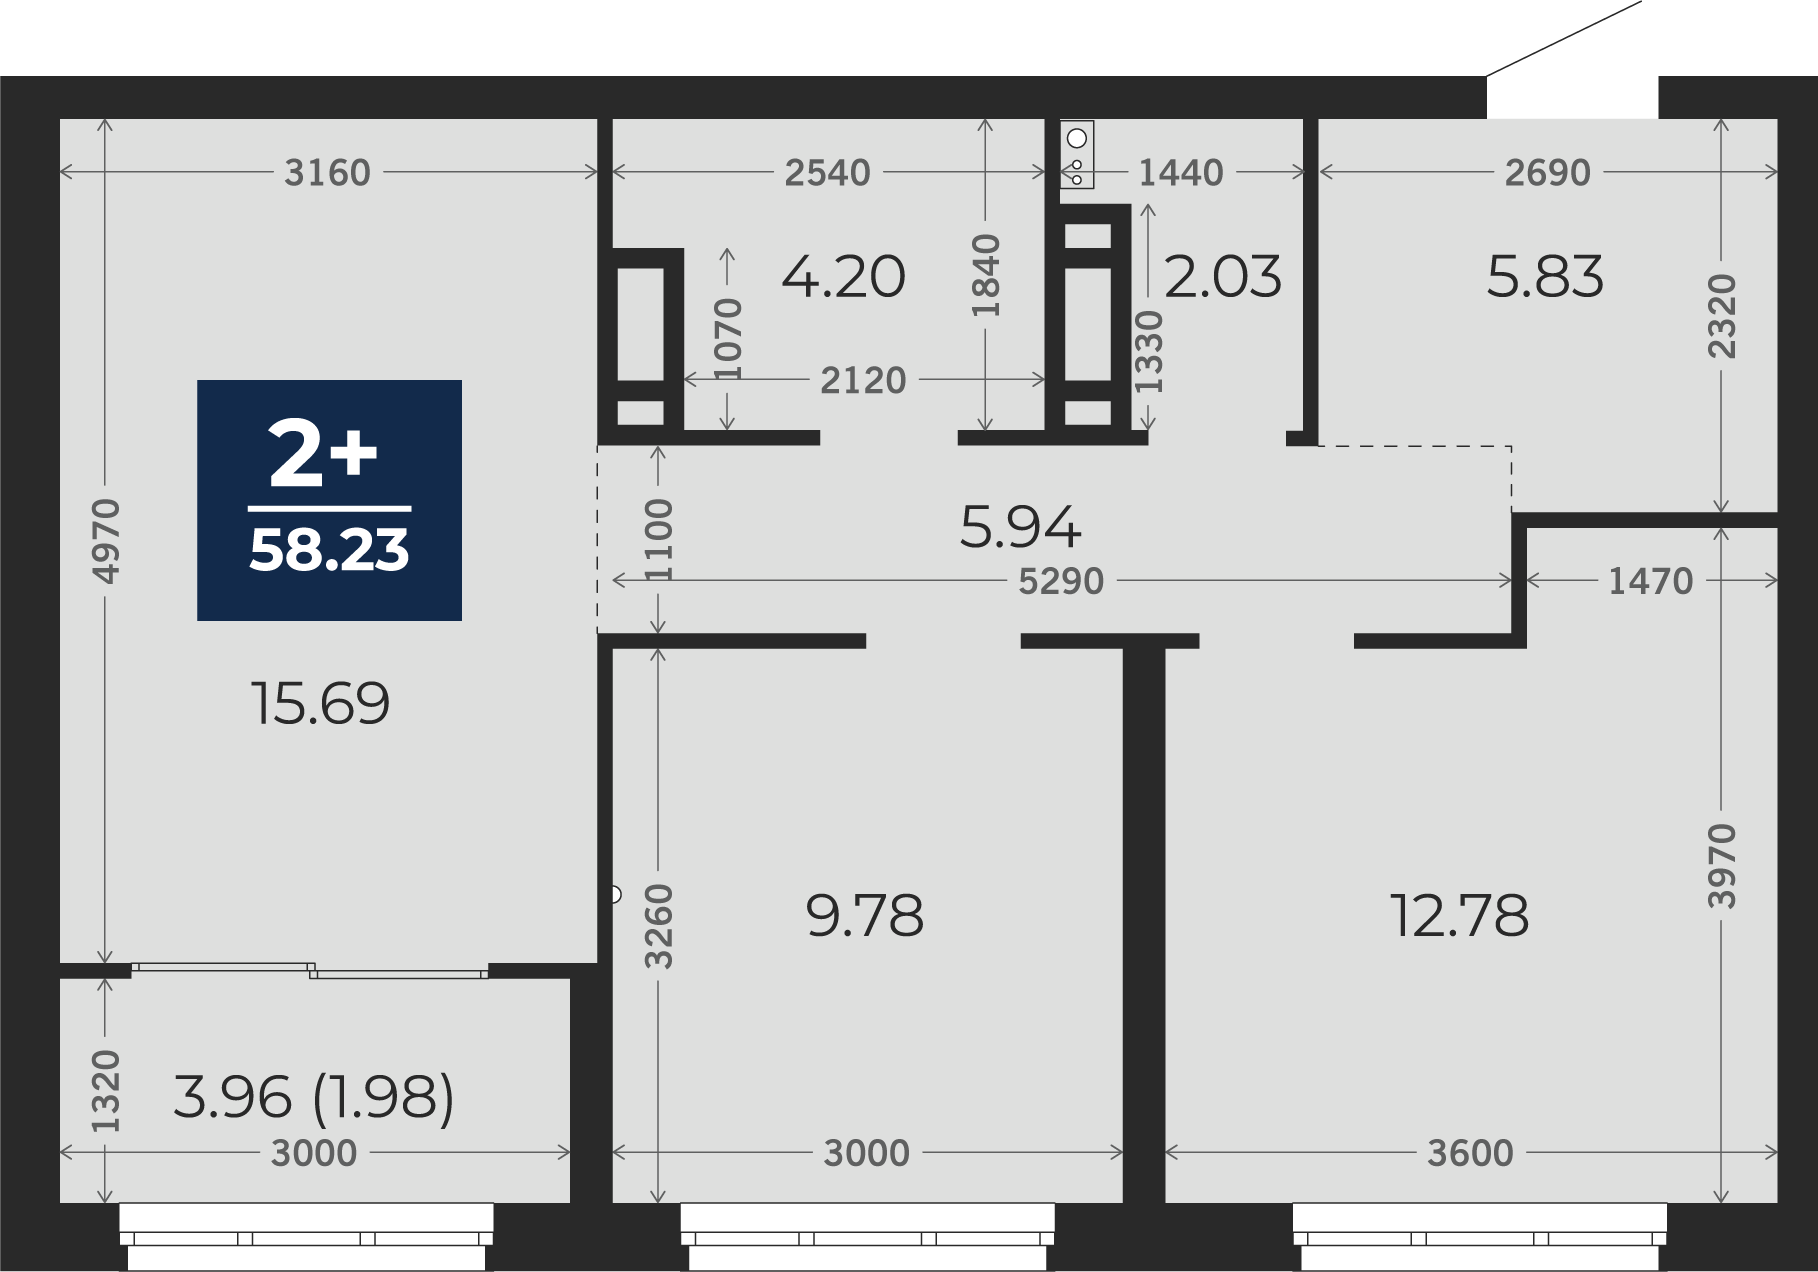 Квартира № 214, 2-комнатная, 58.23 кв. м, 2 этаж